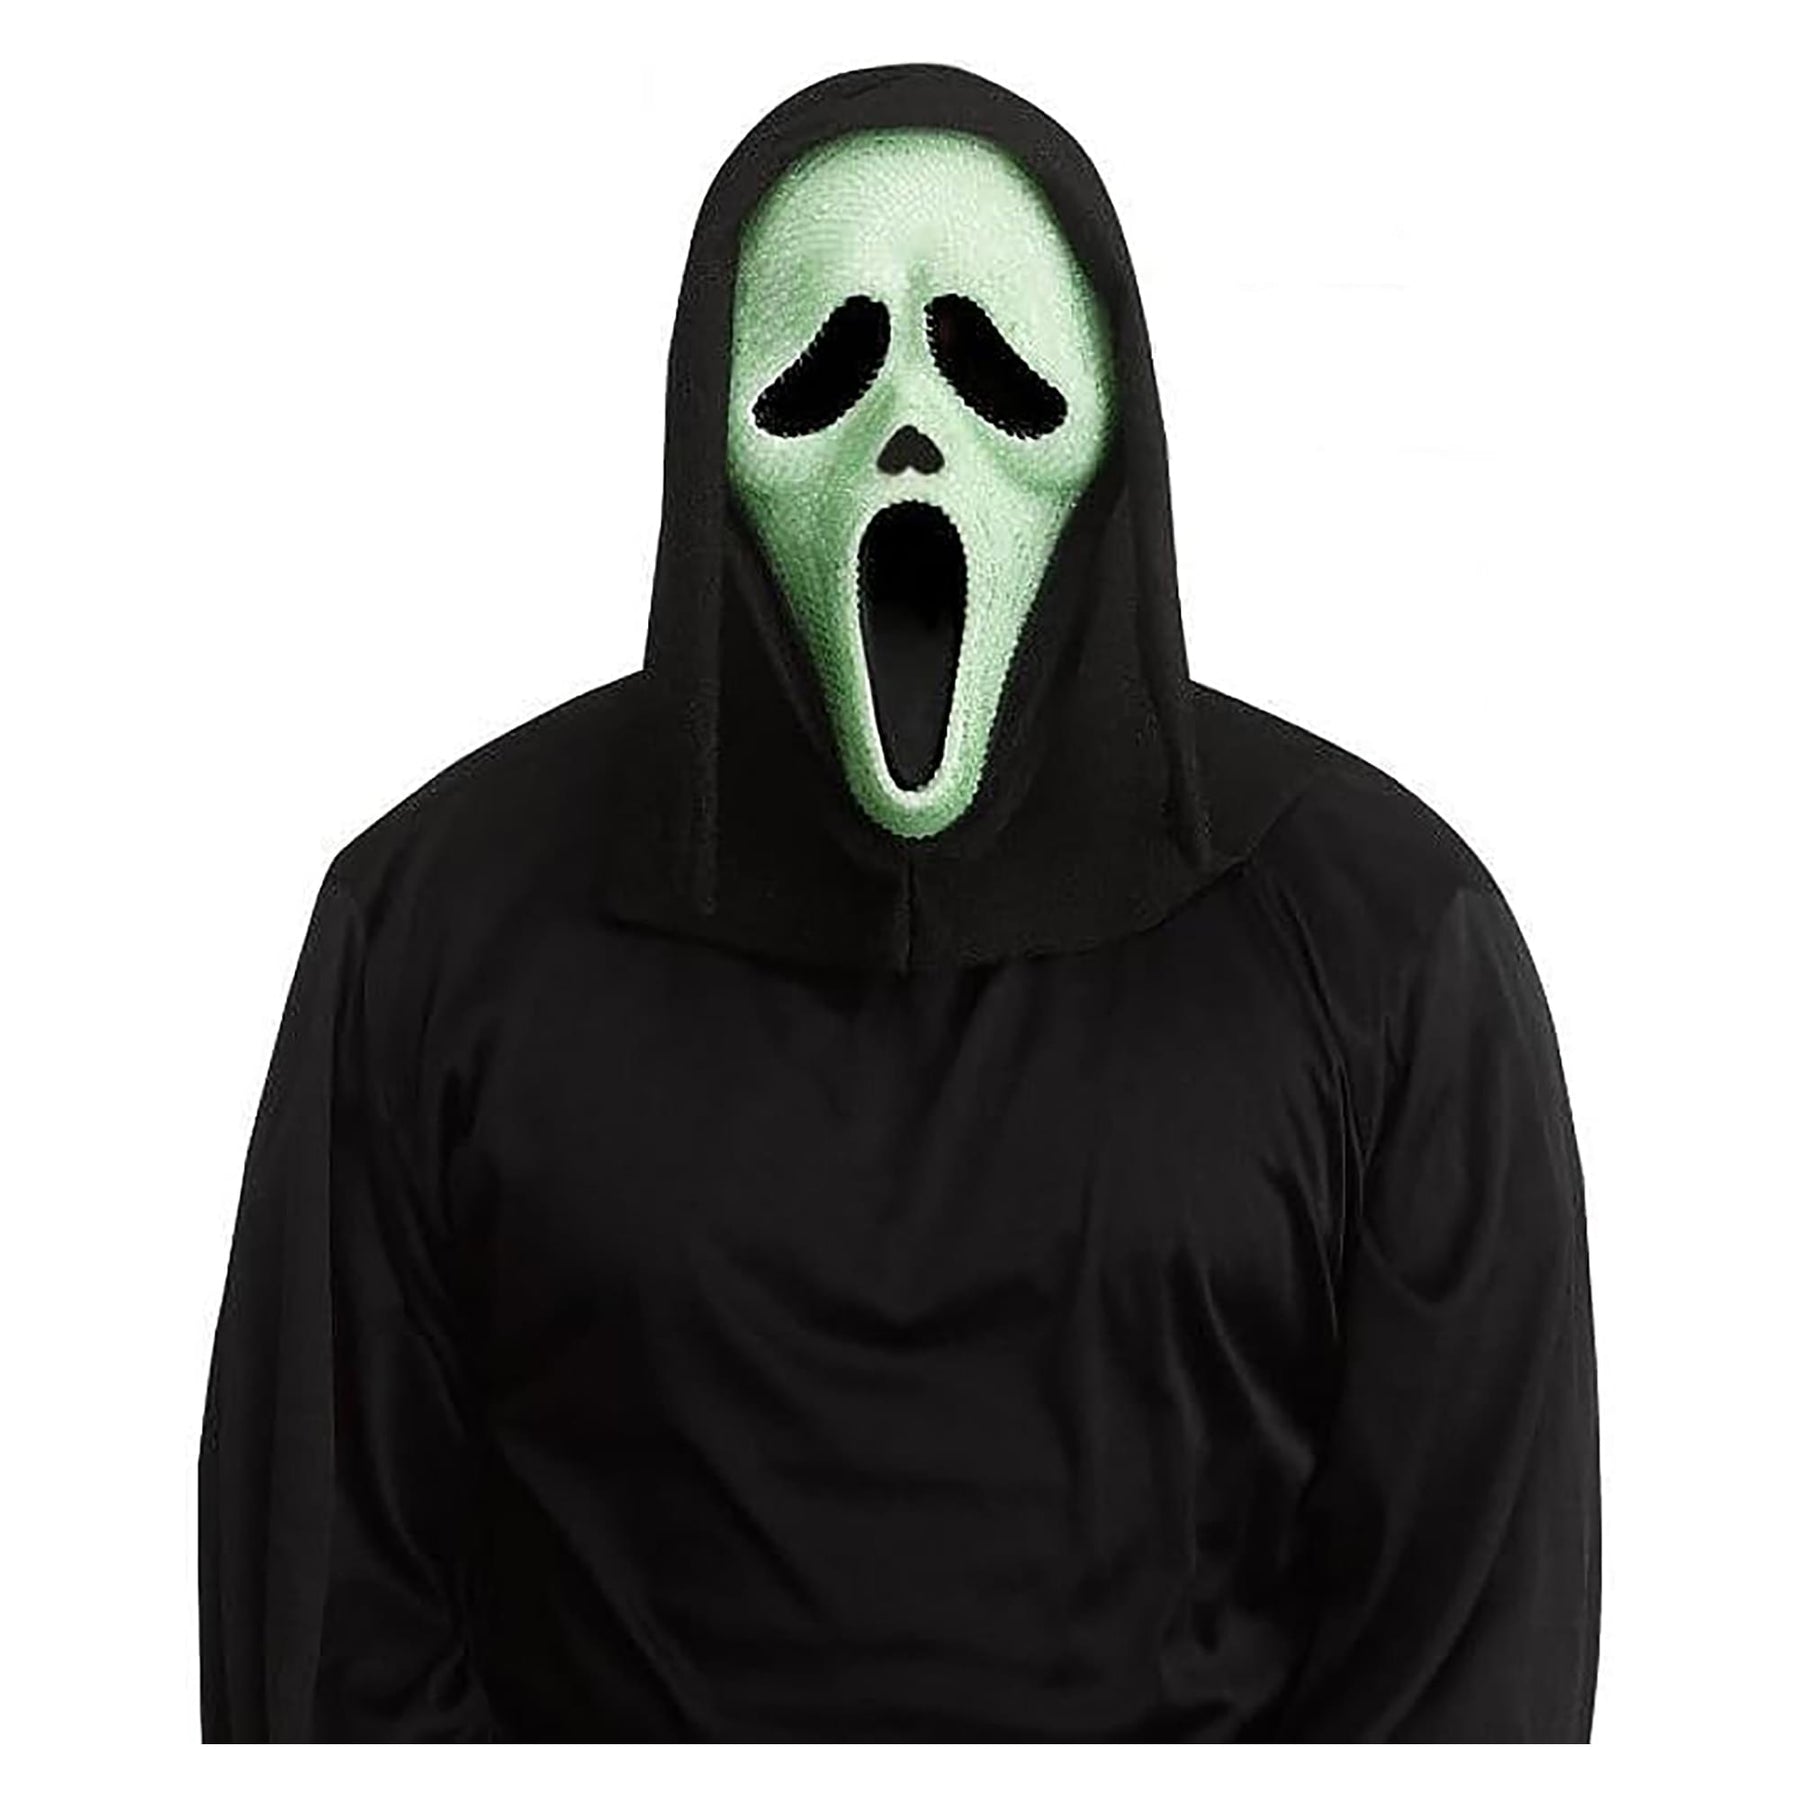 Ghost Face GID Bling Costume Mask